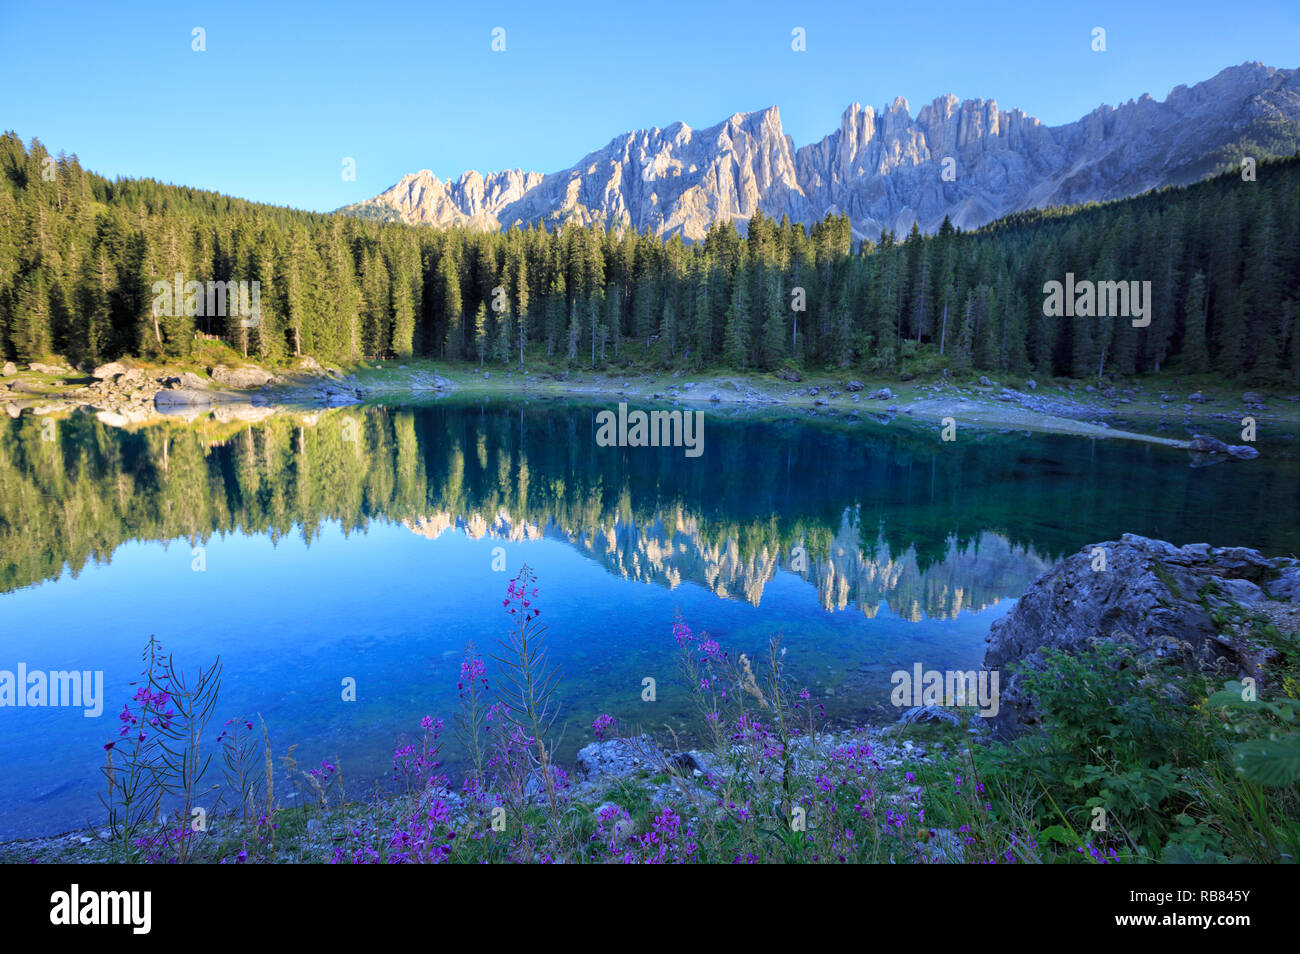 Die Gebirgskette Latemar spiegelt sich in der Karersee/Karersee/Lago di Carezza. Dolomiten Region der Alpen in Südtirol, Italien. Stockfoto